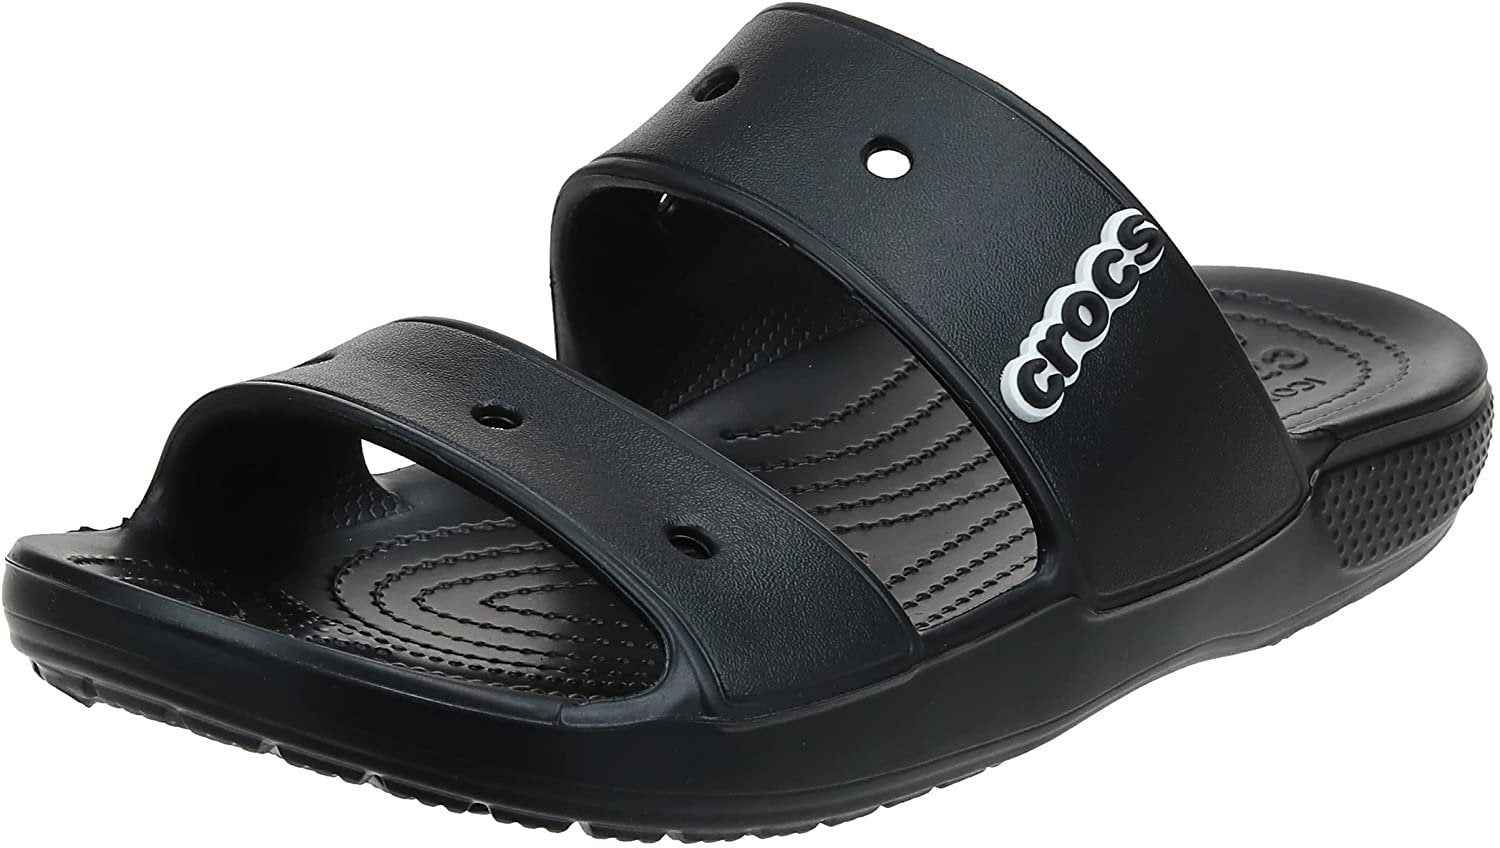 Crocs Unisex Classic Two-Strap Slide Sandals, Black, 10 US Men